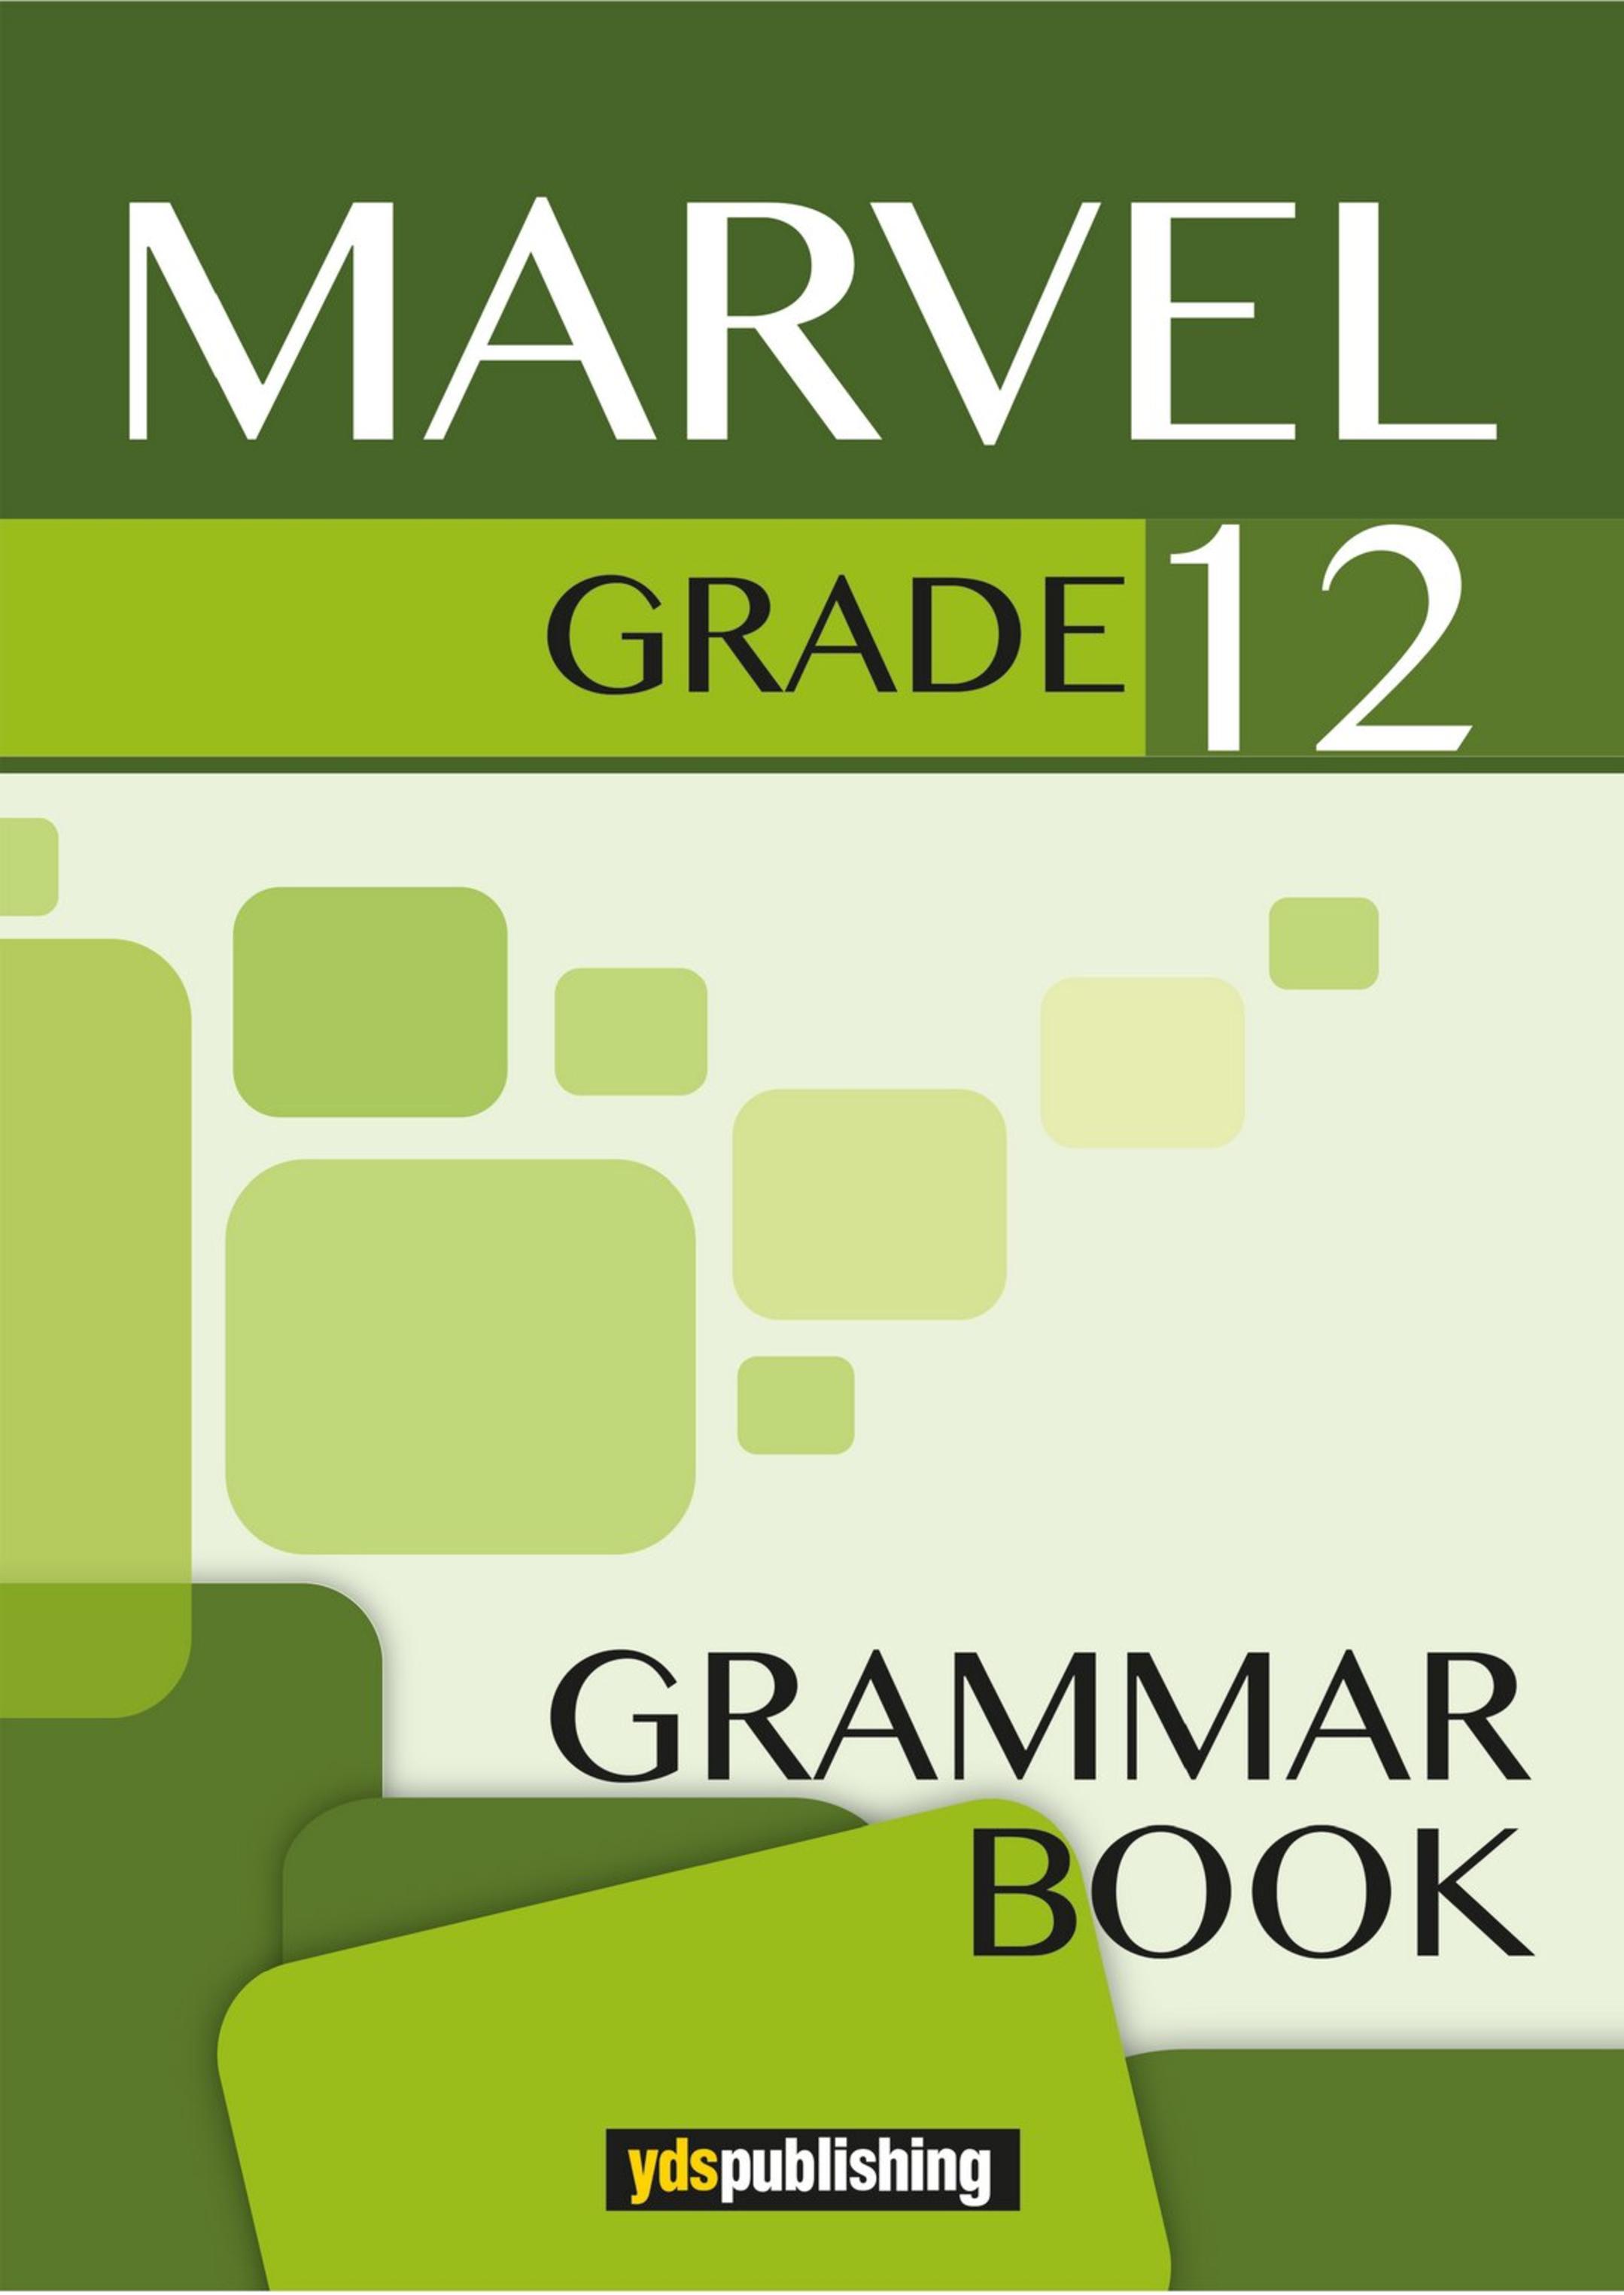 yds publishing grammar book pdf